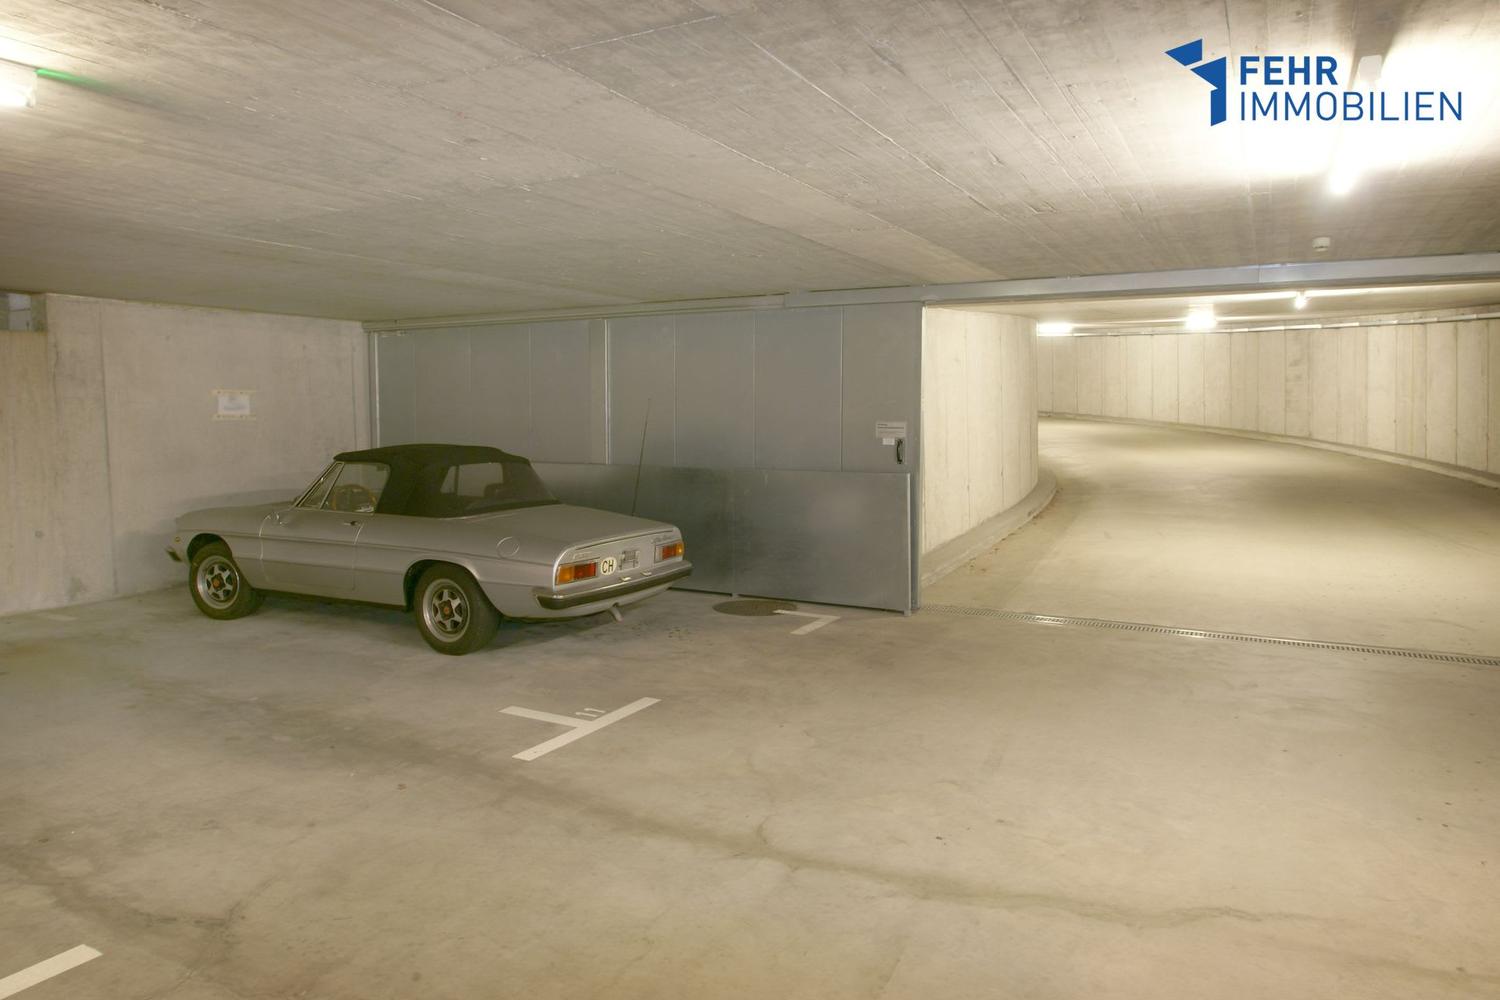 Parkplatz, Garage kaufen in Region Bern | homegate.ch
